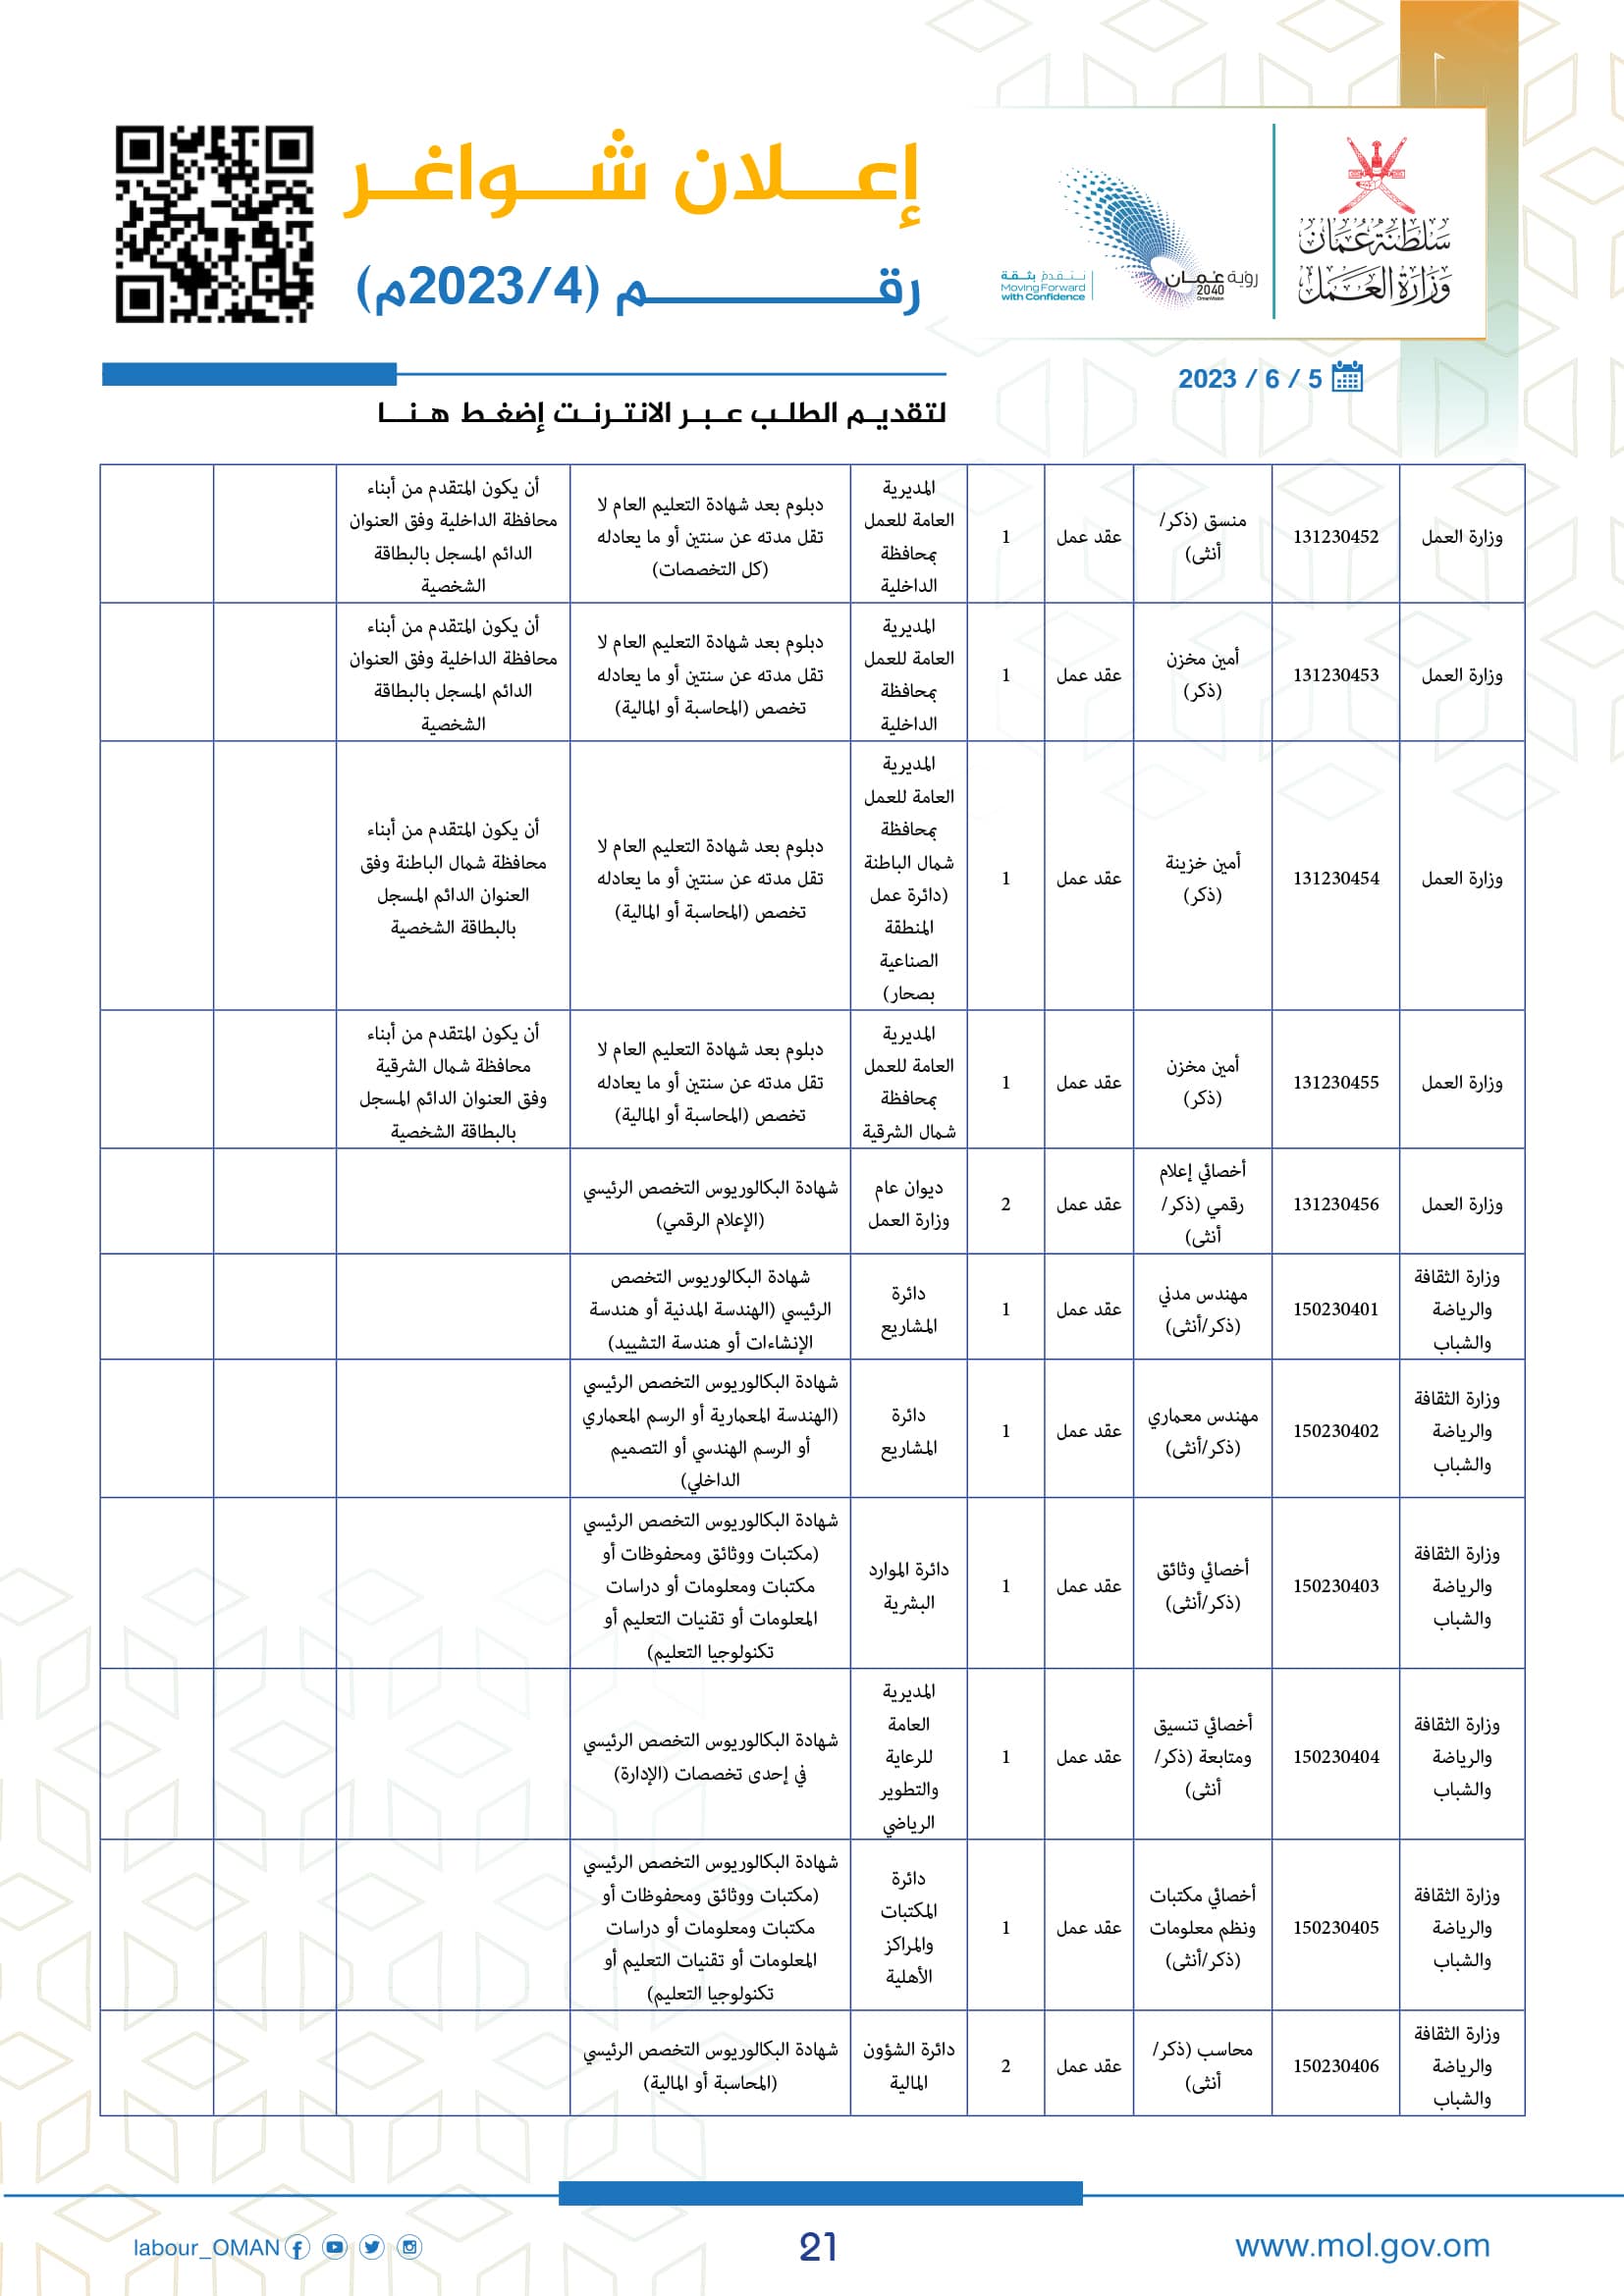 وظائف وزارة العمل سلطنة عمان اليوم - وزارة العمل الوظائف - وظائف سلطنة عمان اليوم 